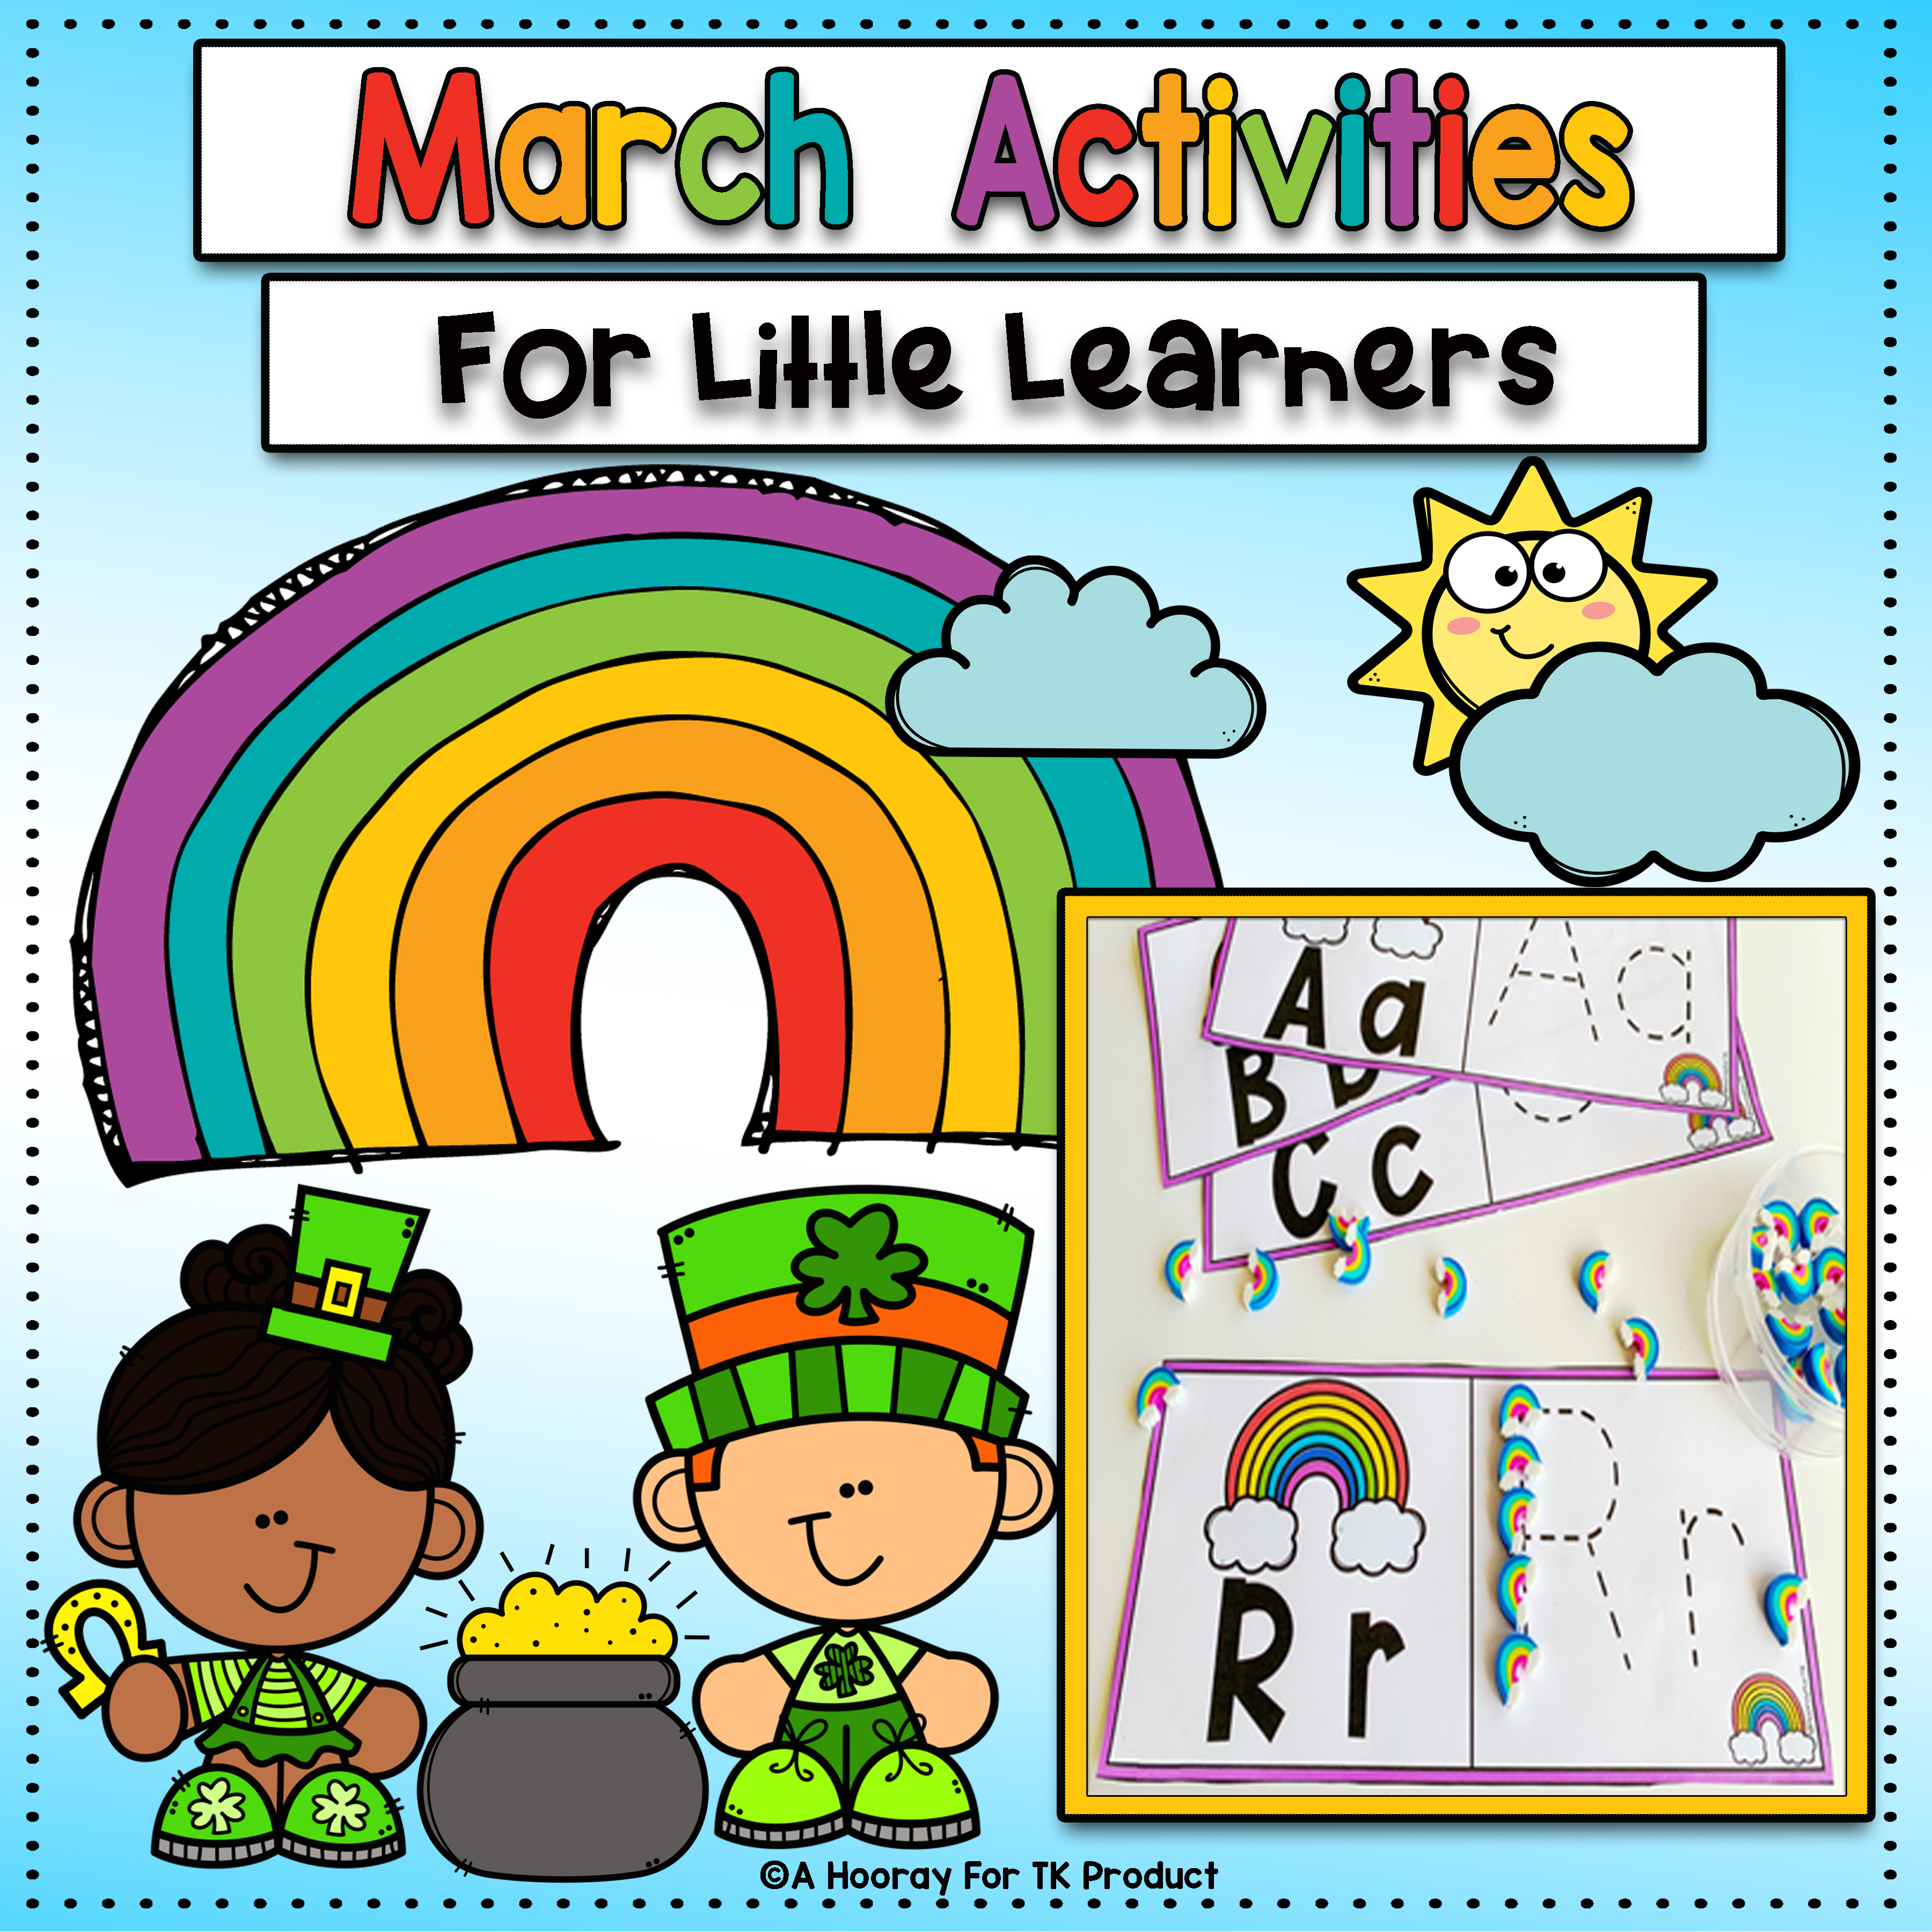 St. Patrick’s Day Activities for Preschool, PreK, and Kindergarten